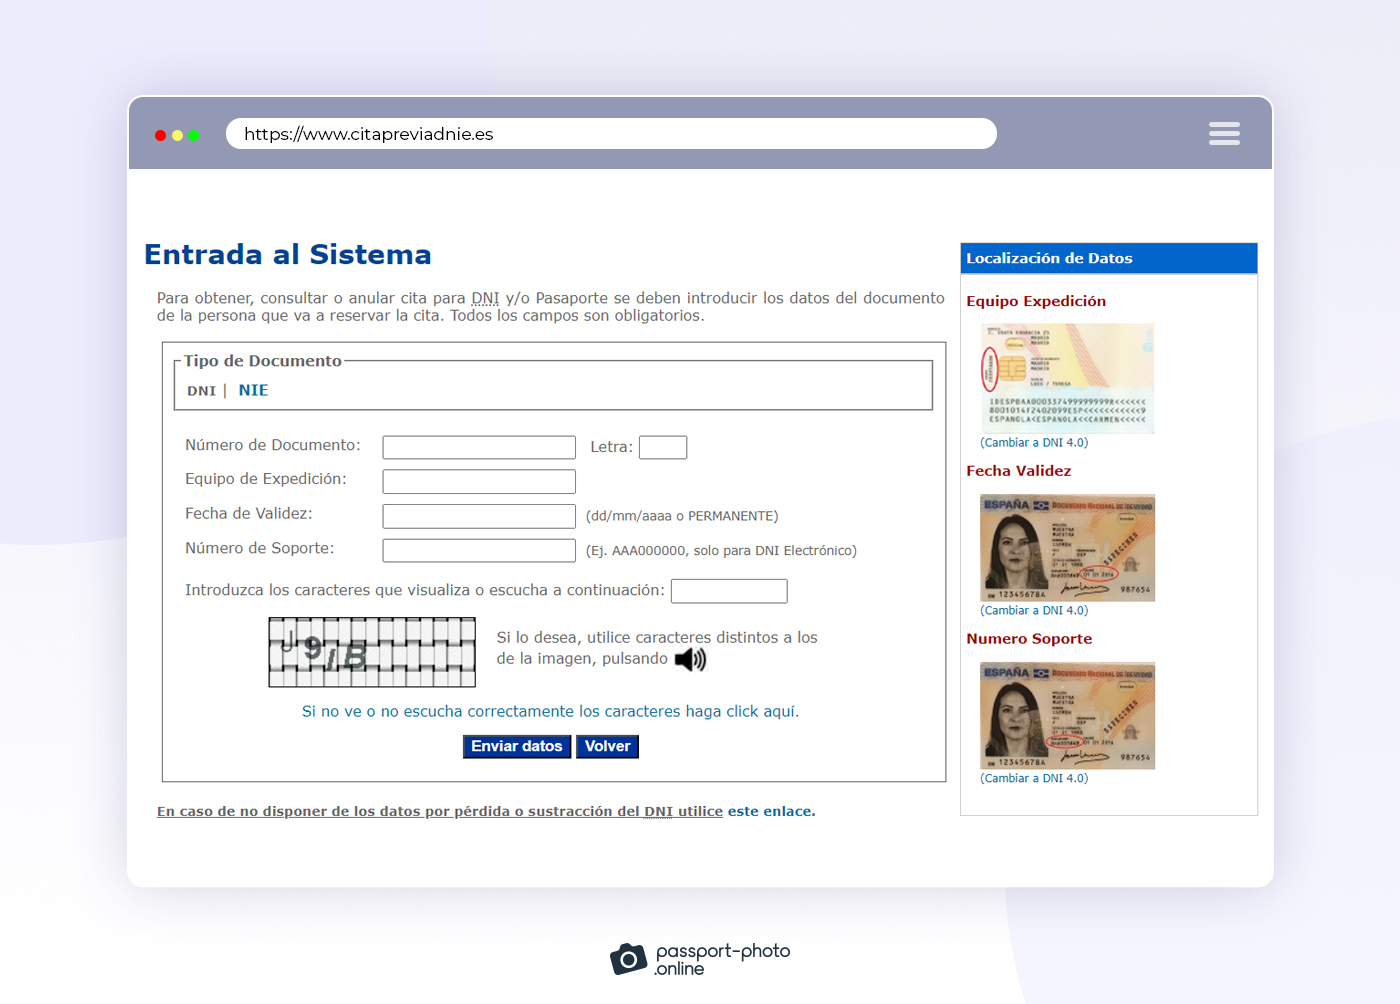 Entra al sistema con datos DNI o NIE y rellena las casillas para continuar con la solicitud de cita para pasaporte.